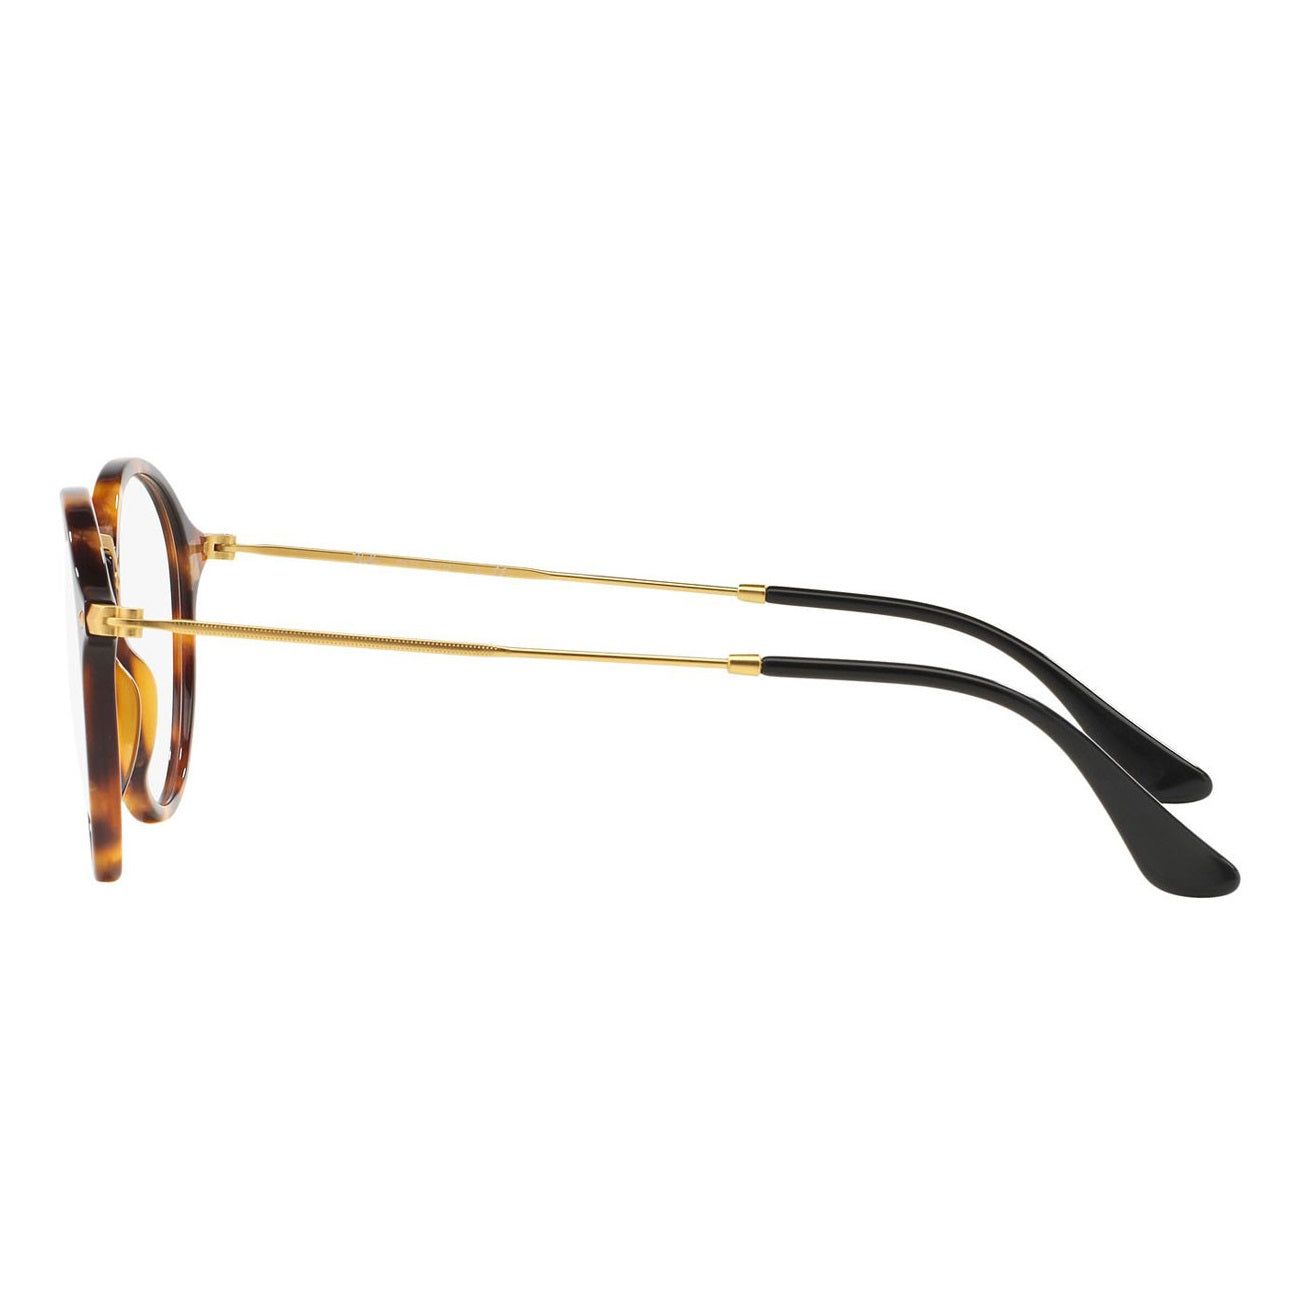 Soporte gafas 23x12x13 cm cromado - RETIF